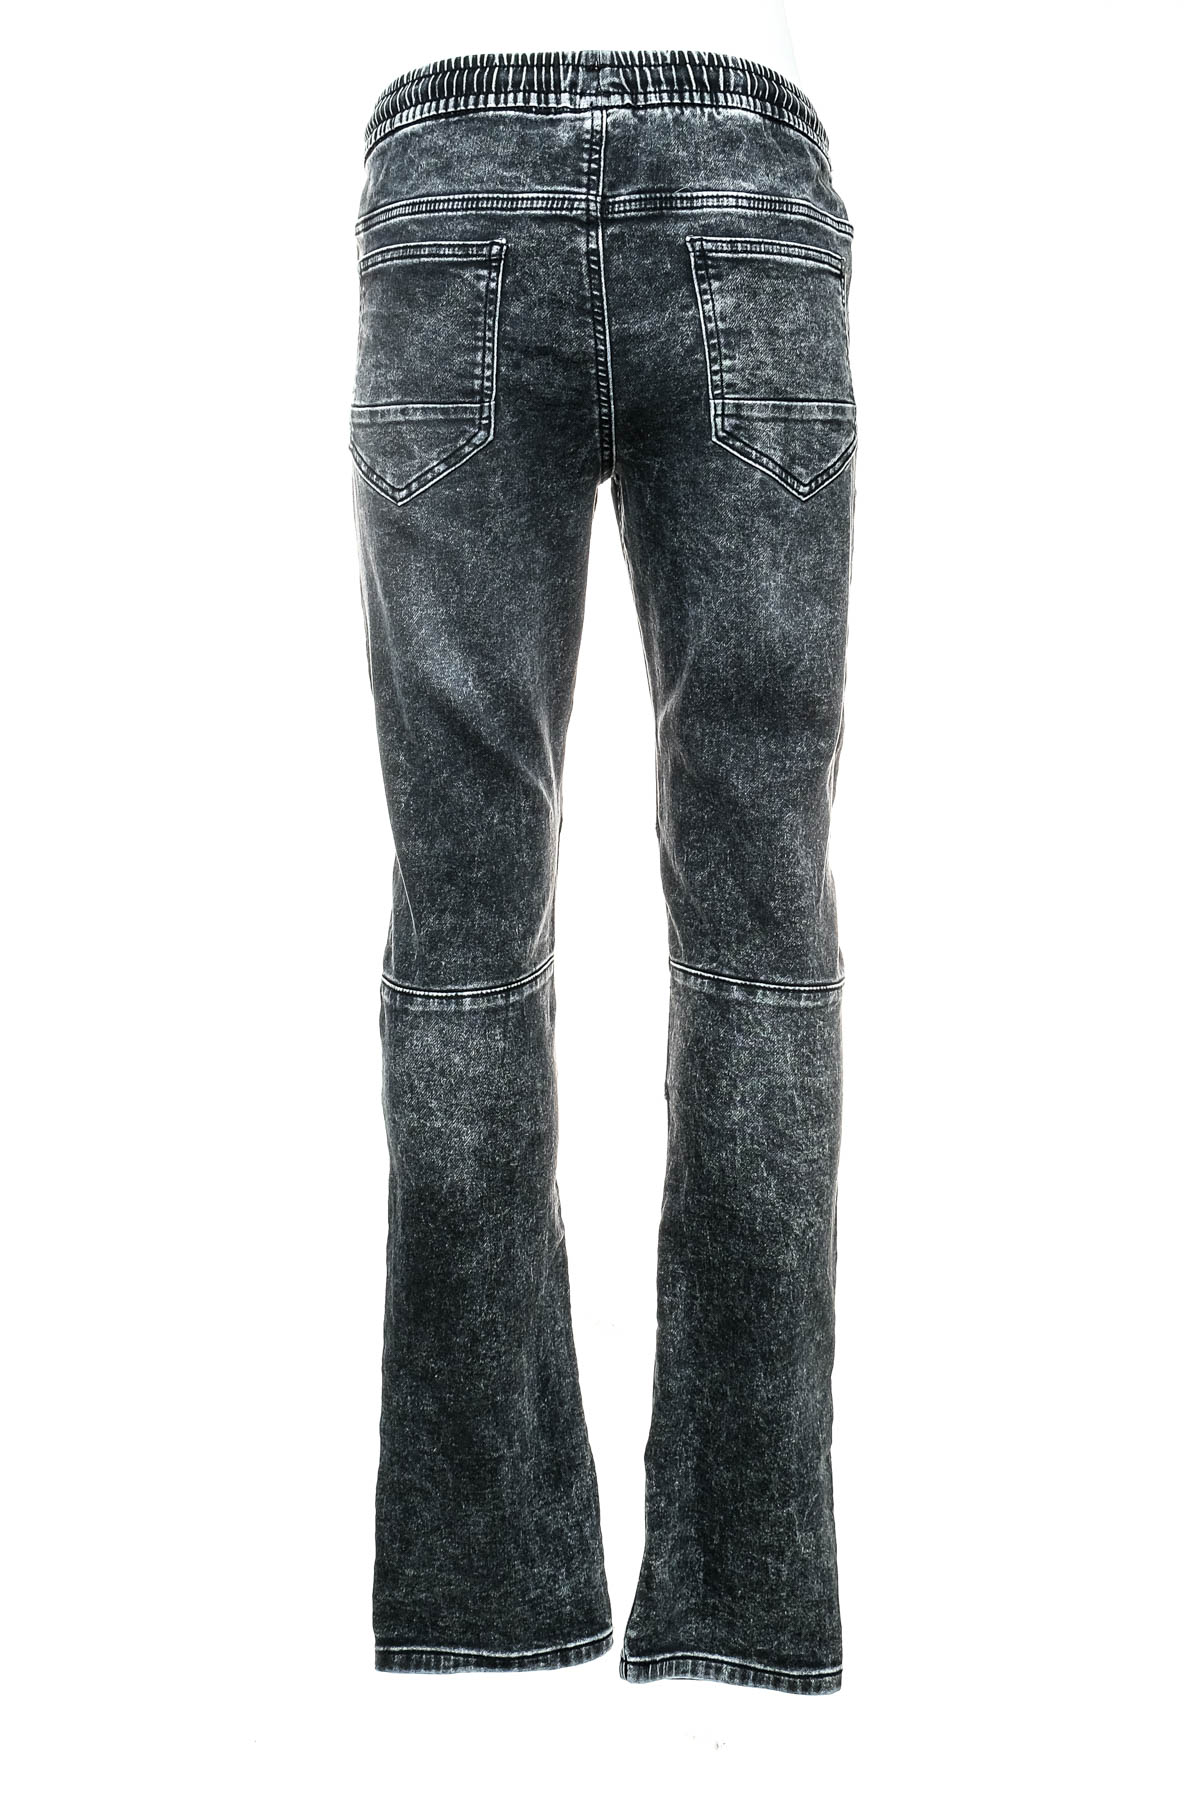 Jeans pentru băiat - C&A - 1